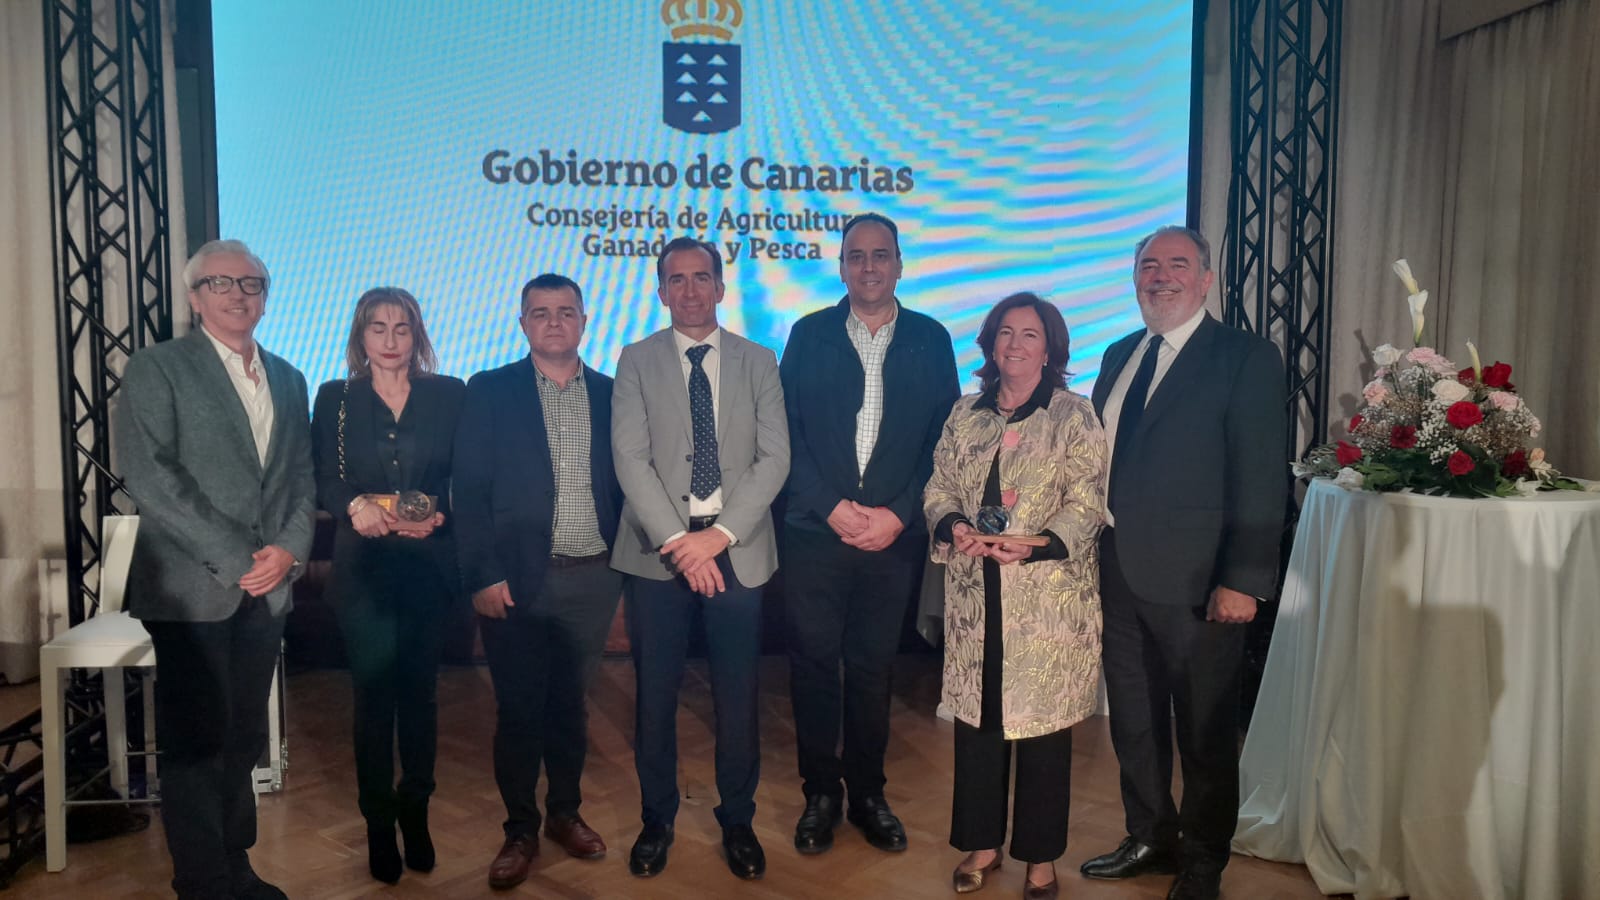 Felicitación a Inverpescatrón por su reconocimiento en los premios agrarios, pesqueros y alimentarios de Canarias